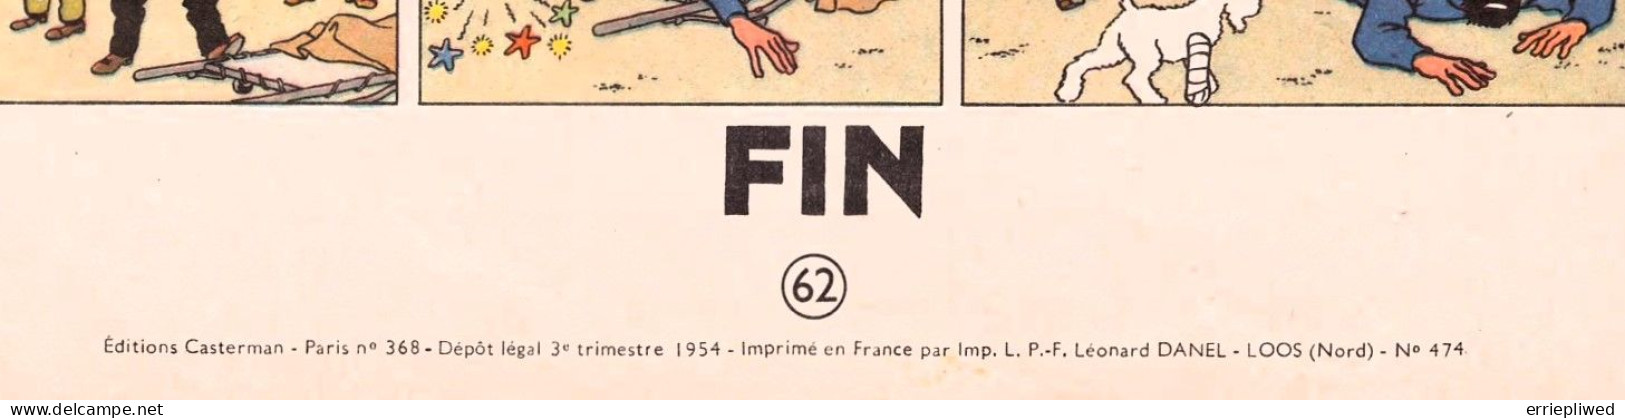 Tintin - On A Marché Sur La Lune - 1954 - B11 - Eerste Editie - 3ème Trimestre - First Copies